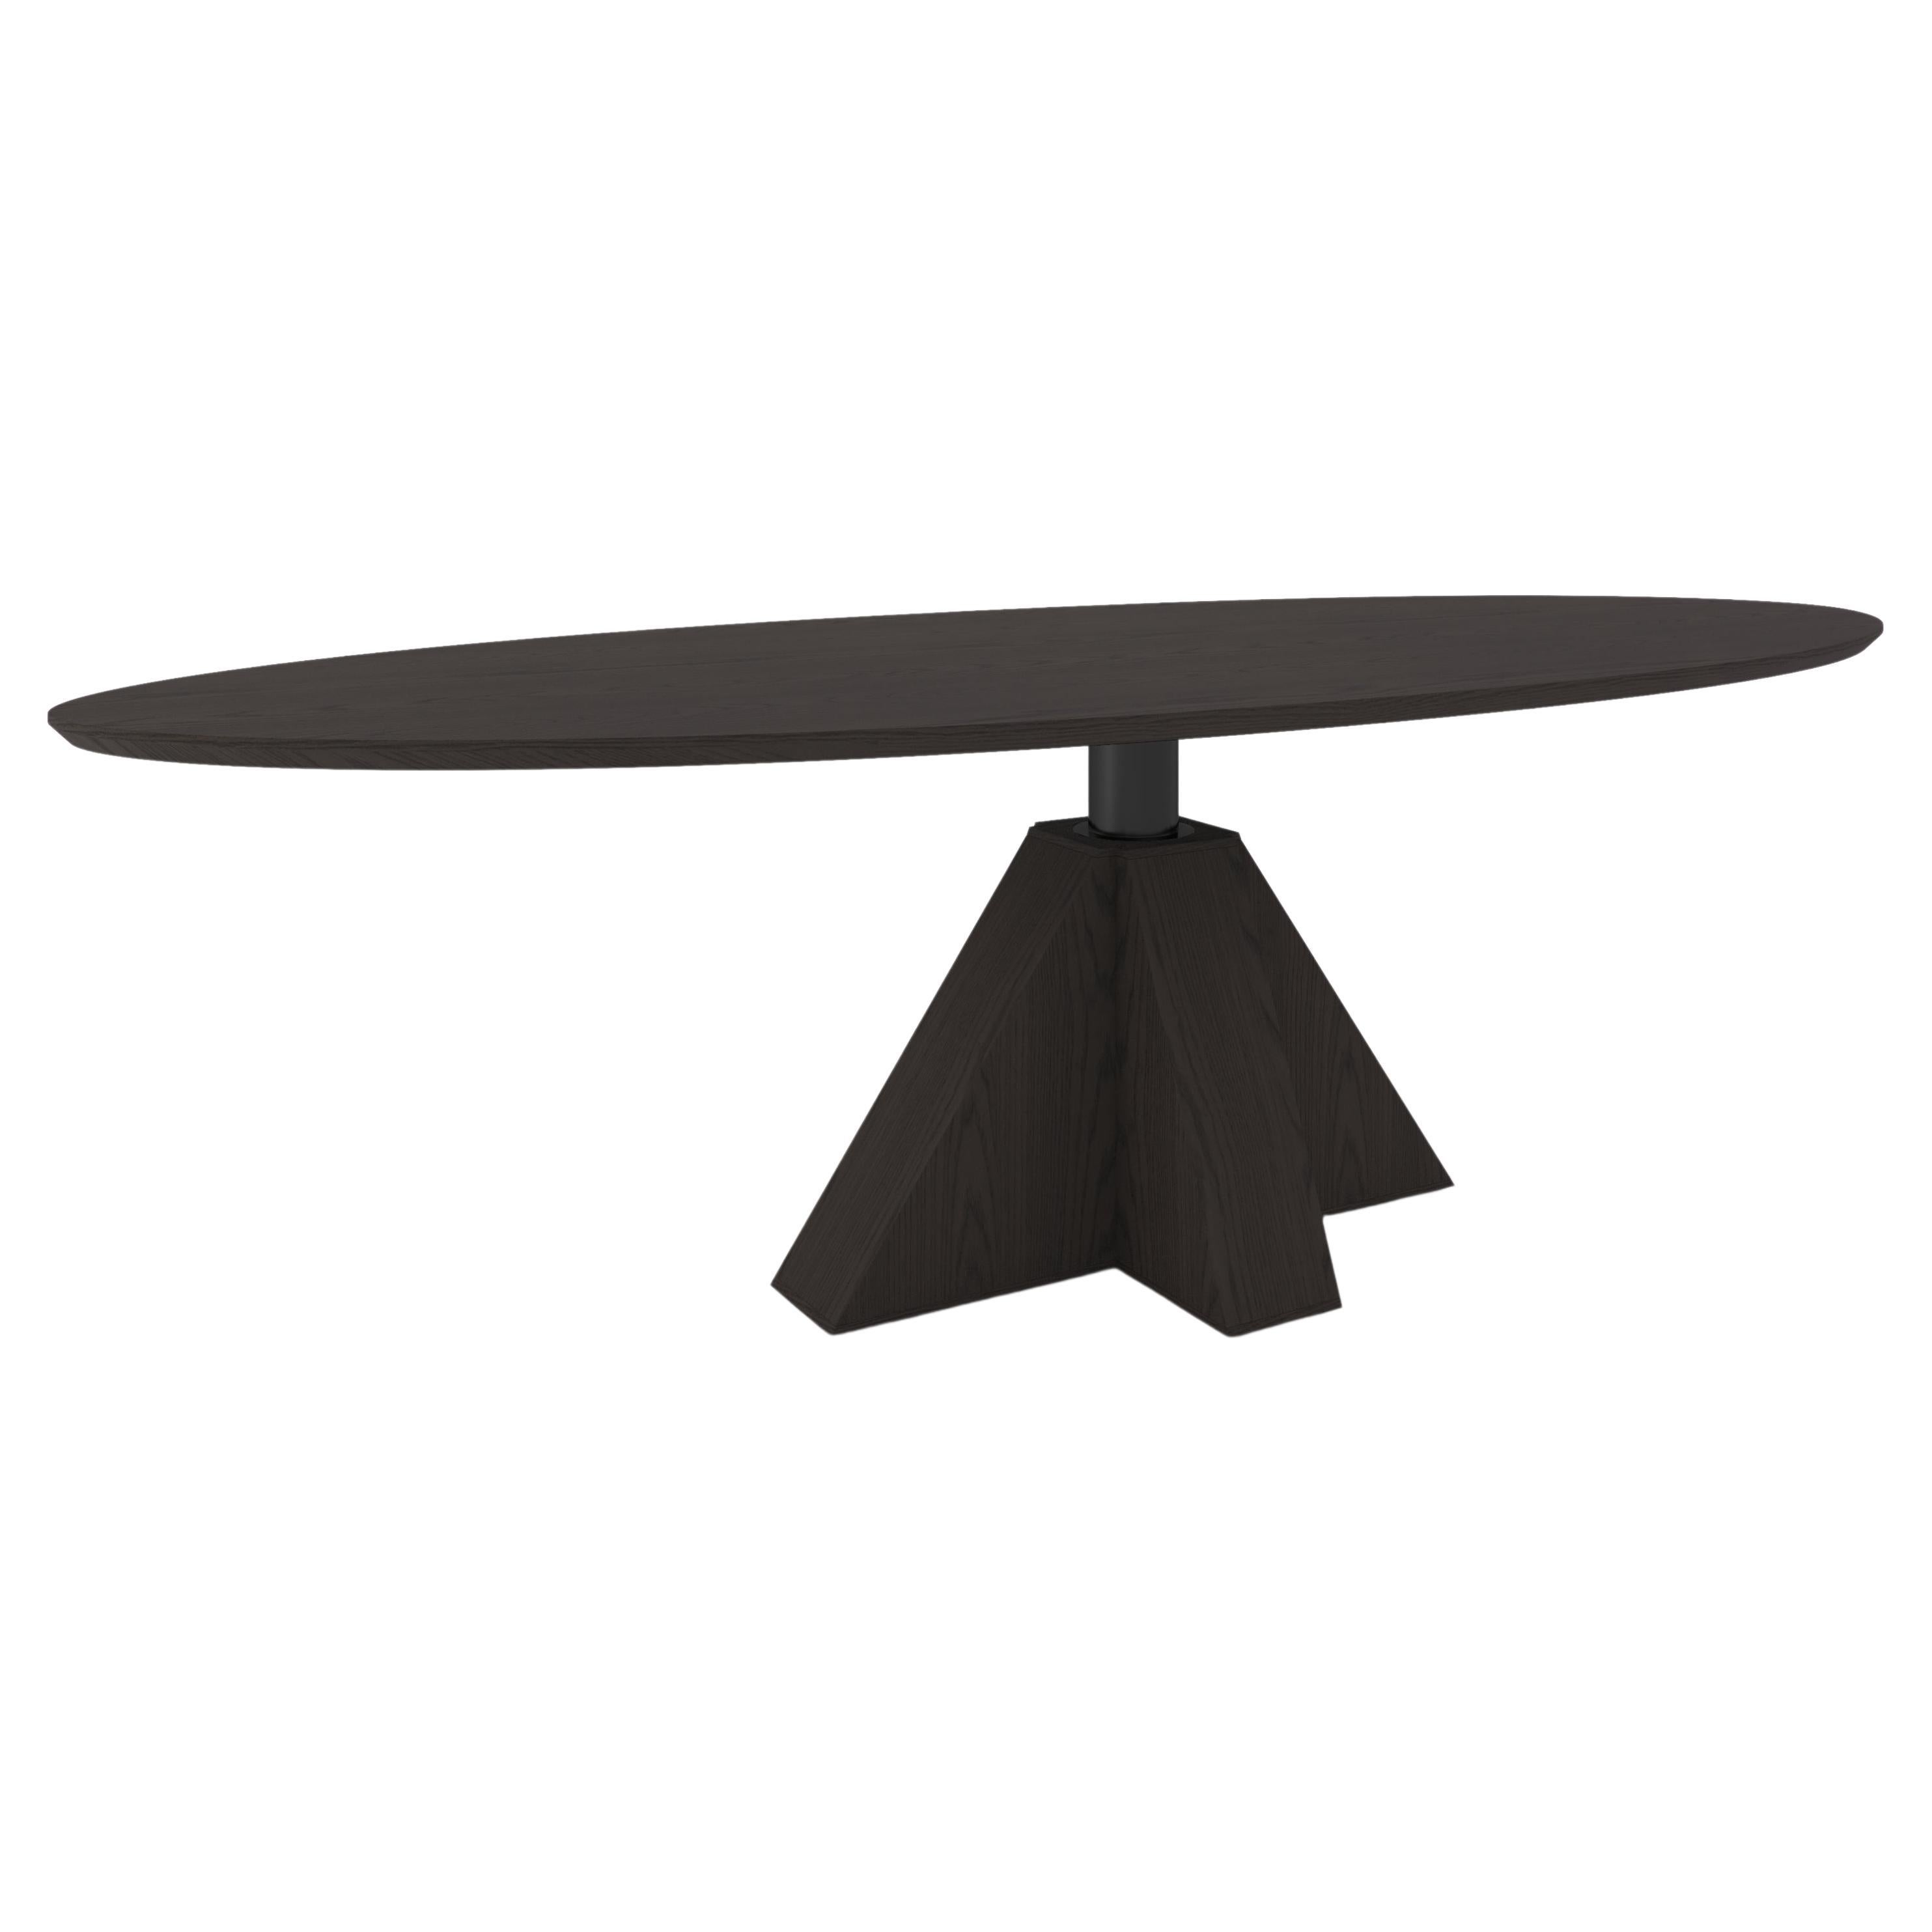 Ovaler M-Oval-Tisch von Daniel Boddam, 70"" x 41"", Rauch- oder gebeizte Eiche